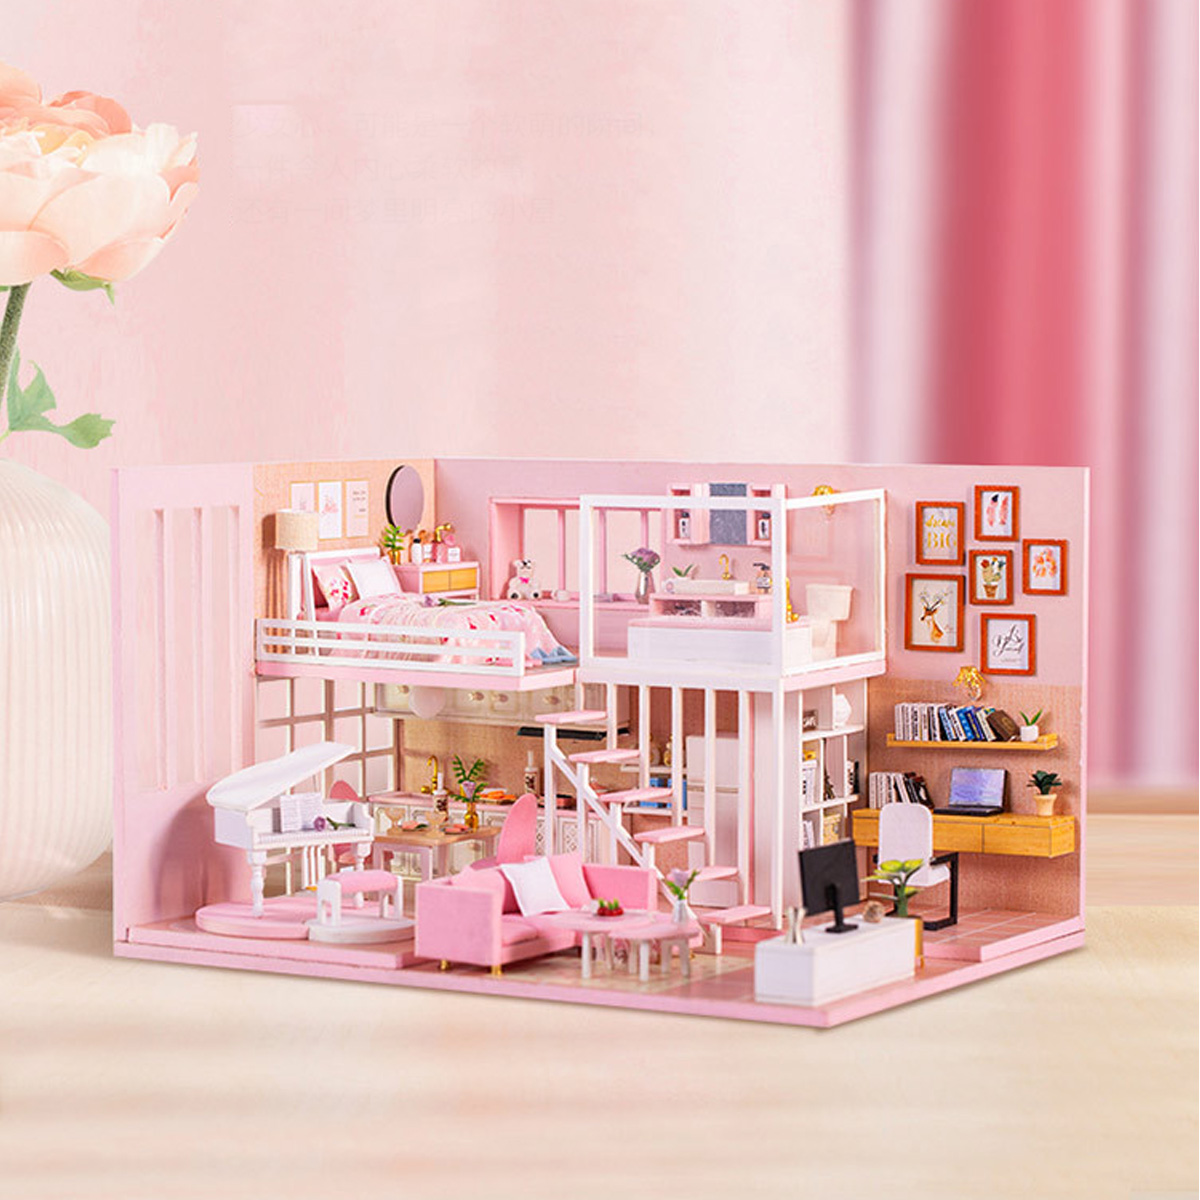 DIY-Creative-Handmade-House-Educational-Toys-Girl-Heart-Birthday-Gift-Doll-House-1635958-1